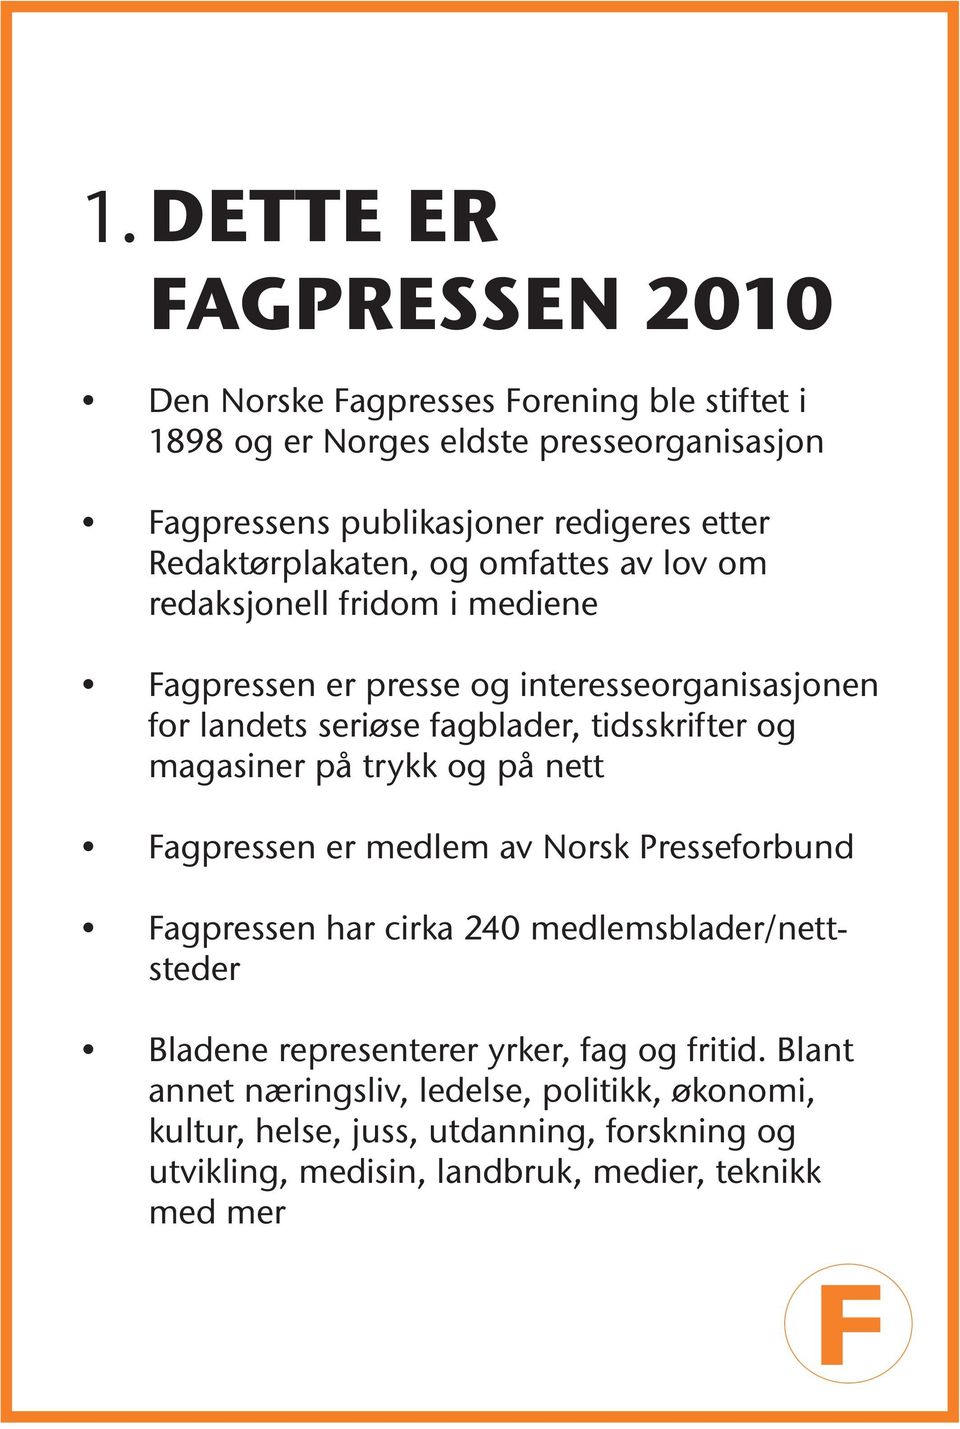 tidsskrifter og magasiner på trykk og på nett Fagpressen er medlem av Norsk Presseforbund Fagpressen har cirka 240 medlemsblader/nettsteder Bladene